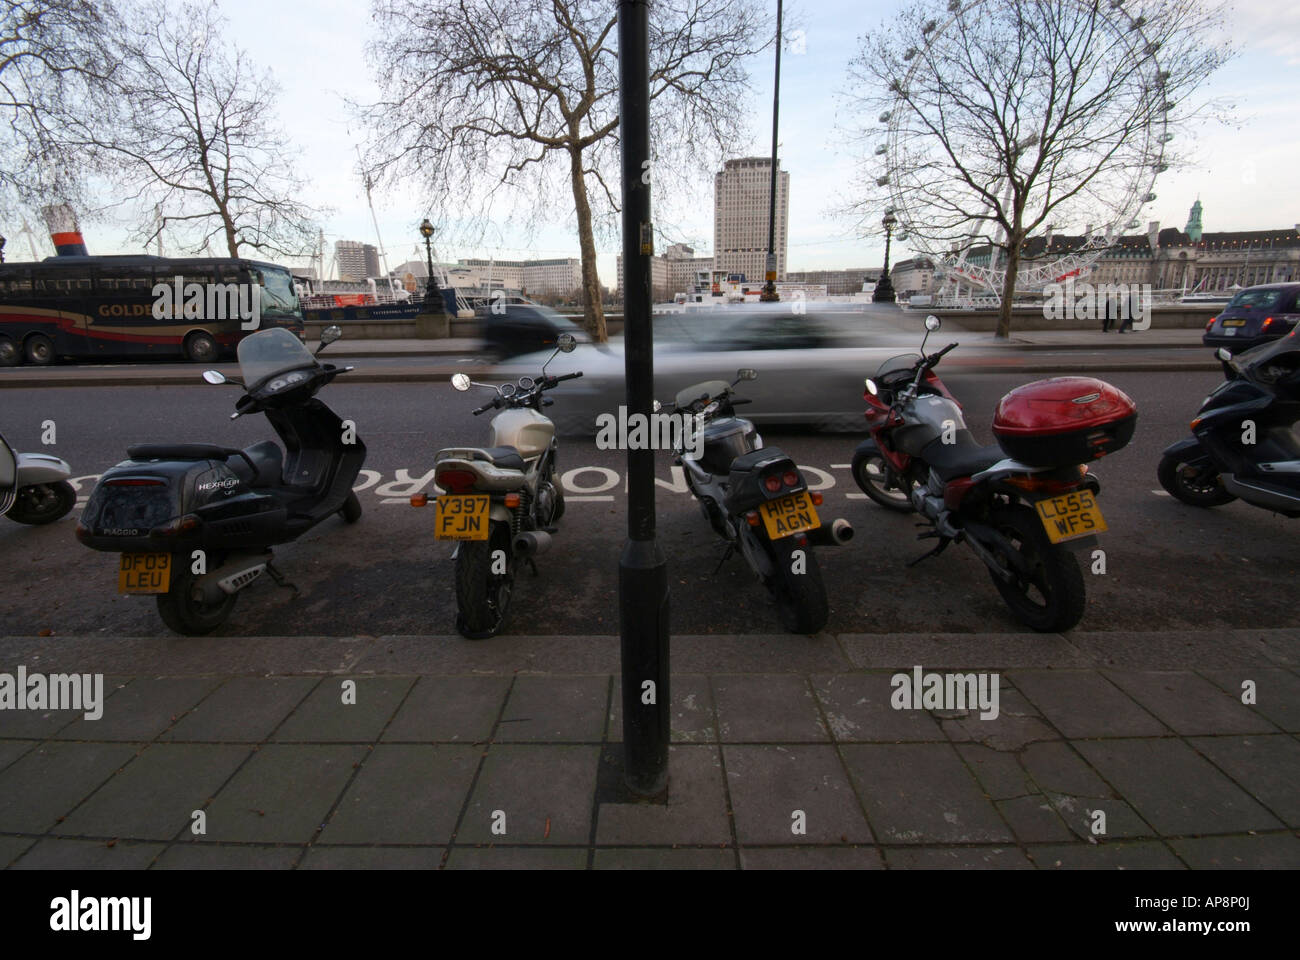 Motos garées dans le parking en route. Banque D'Images